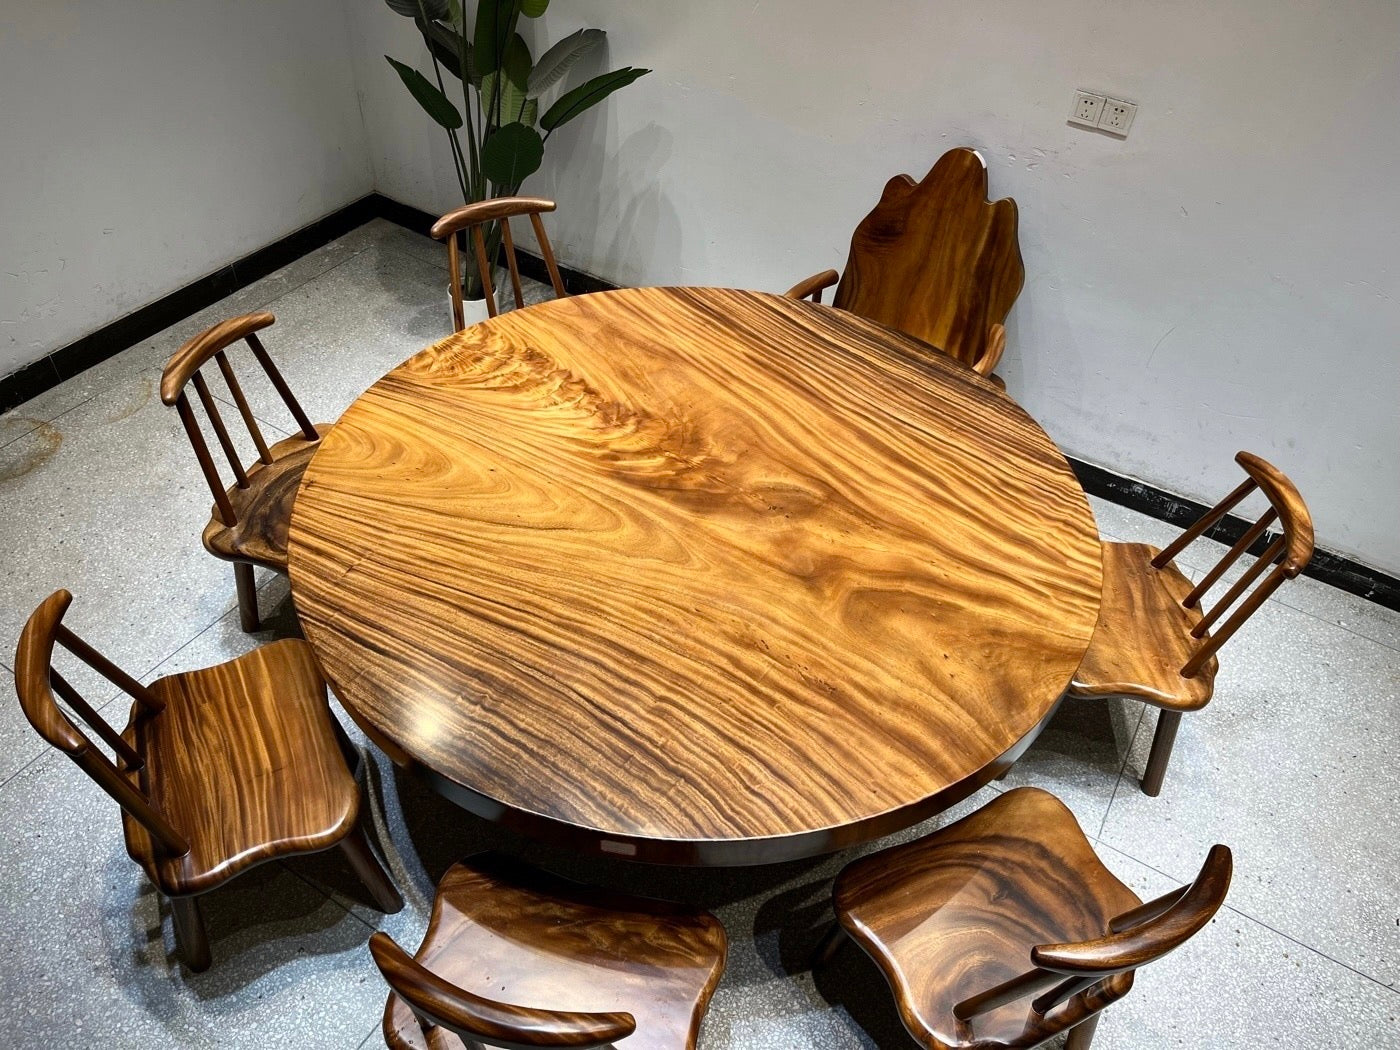 طاولة مستديرة خشبية كبيرة مقاس 71 بوصة، طاولة مستديرة من الخشب الصلب، قاعدة طاولة مستديرة خشبية، طاولة مستديرة خشبية كبيرة